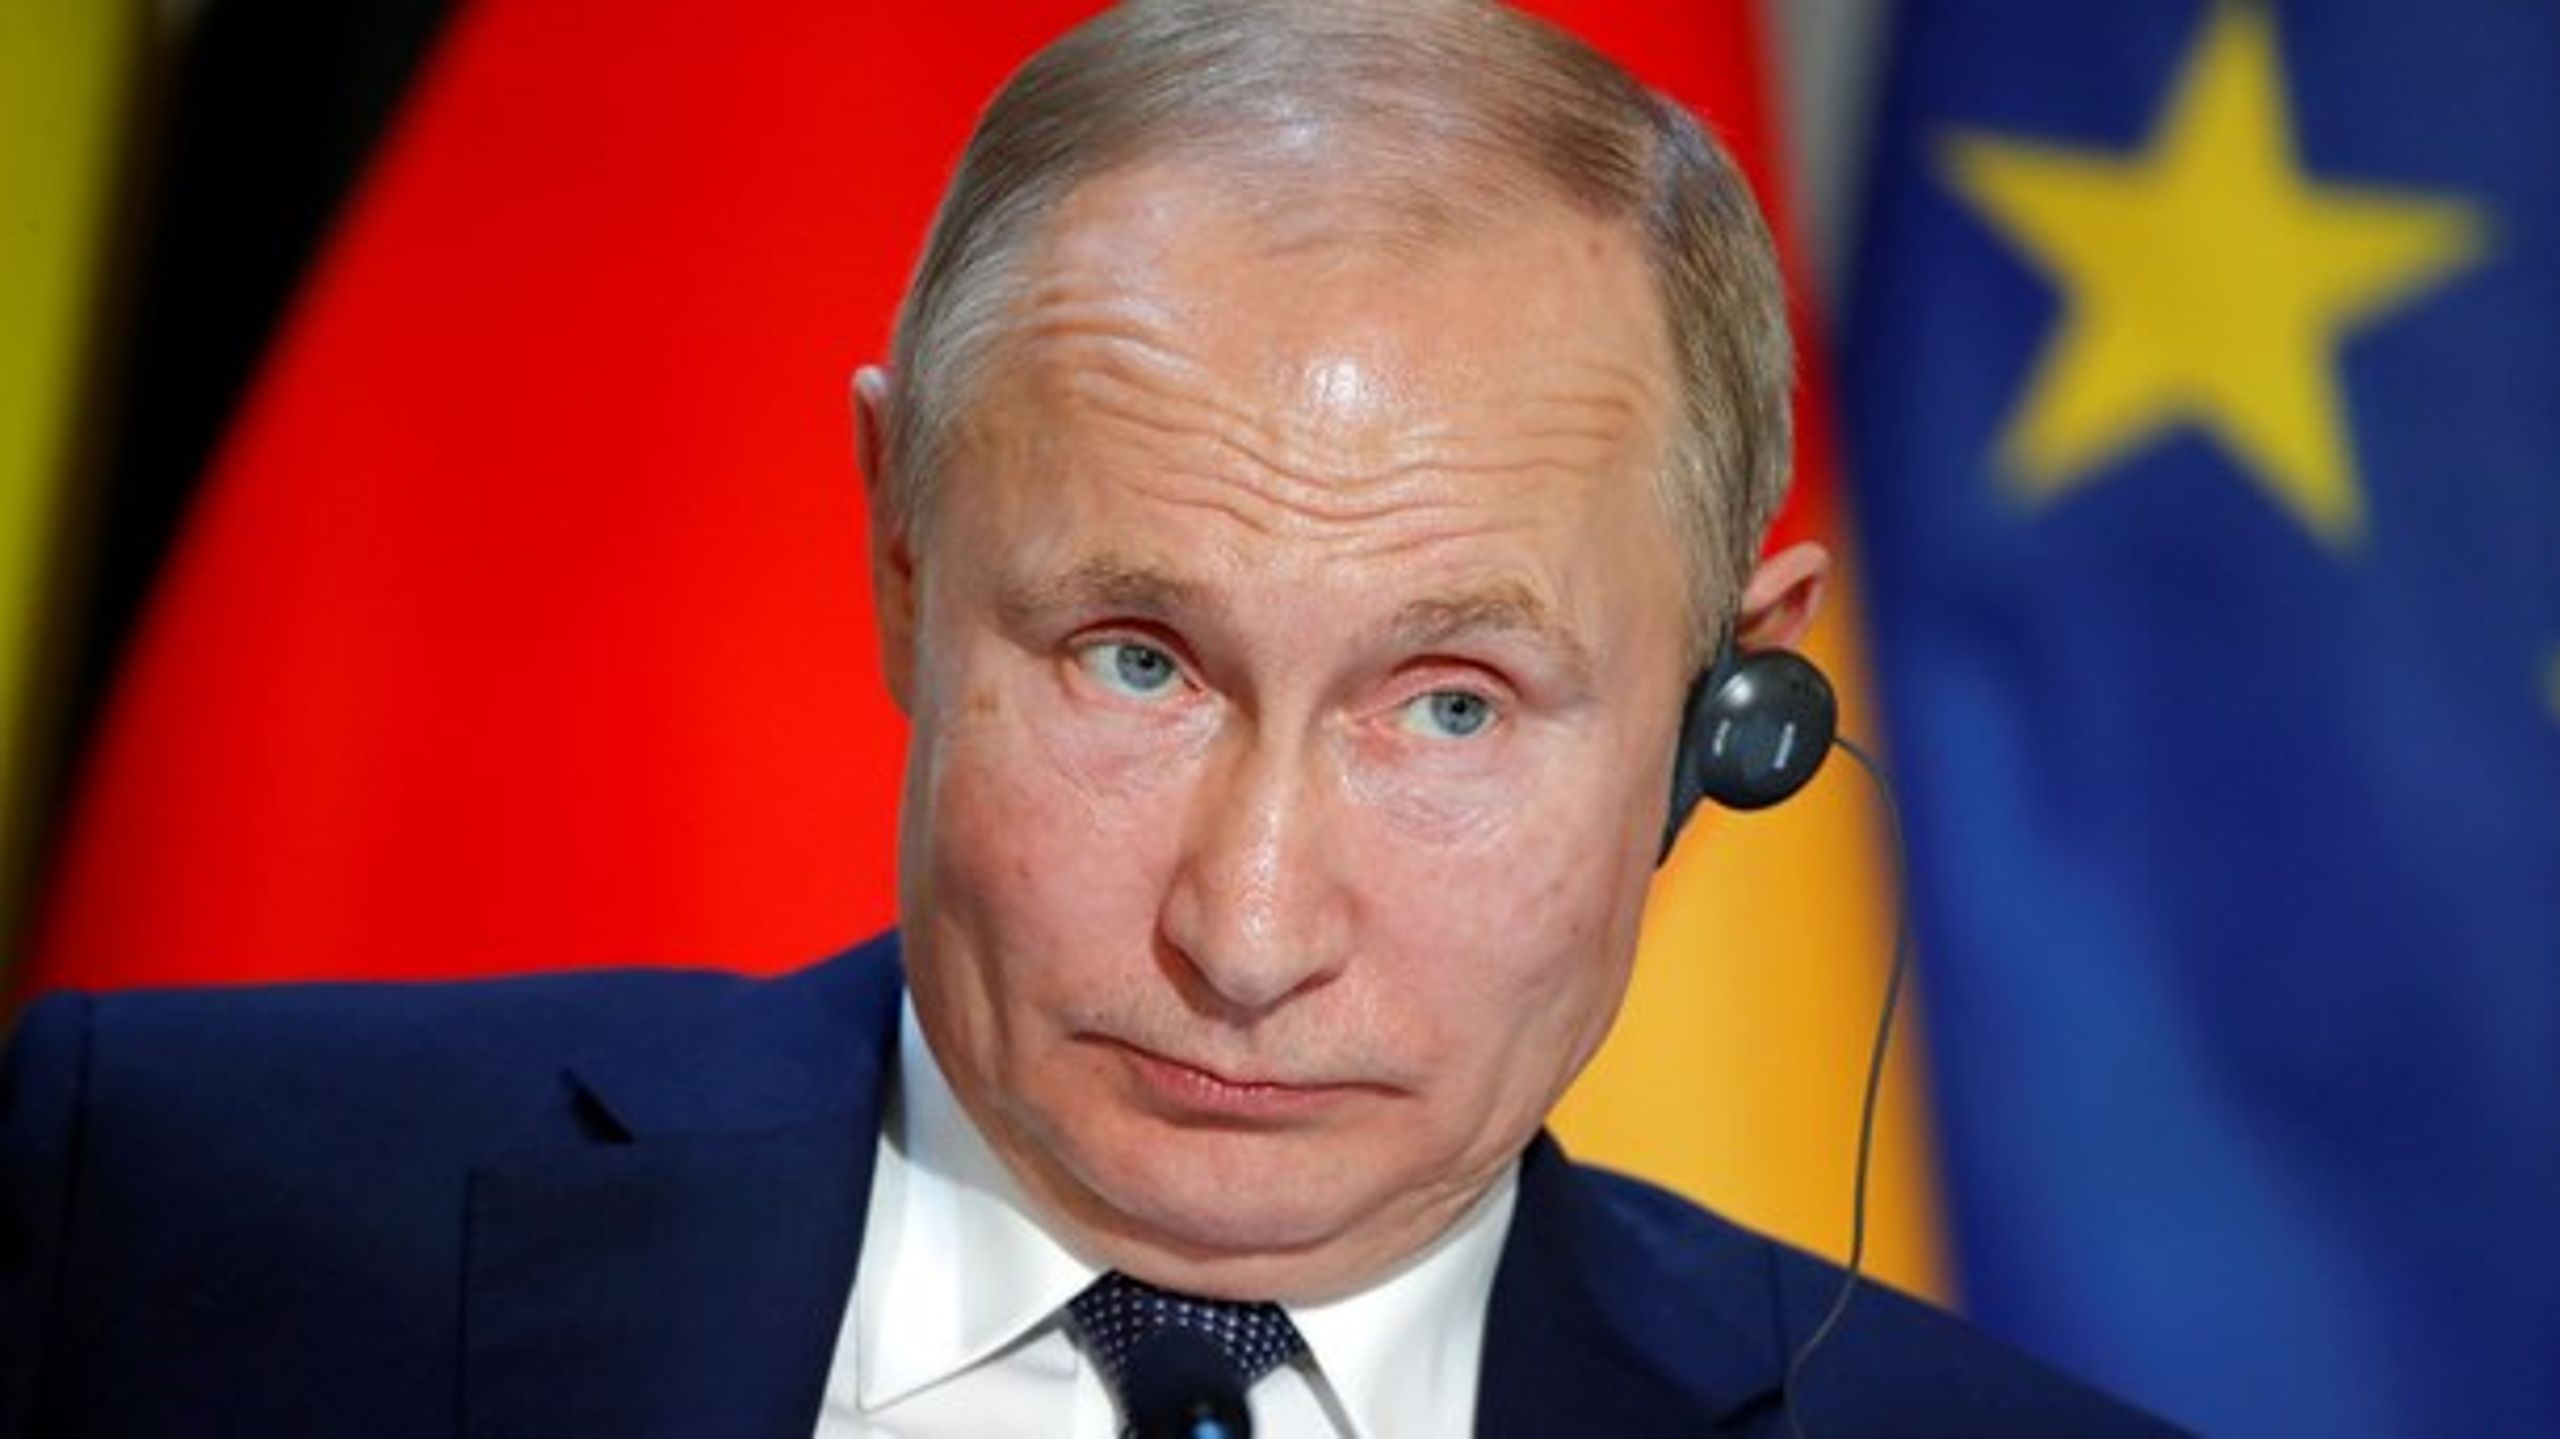 Rusland og Putin går igen i årets mest læste debatindlæg på Altinget Forsvar.